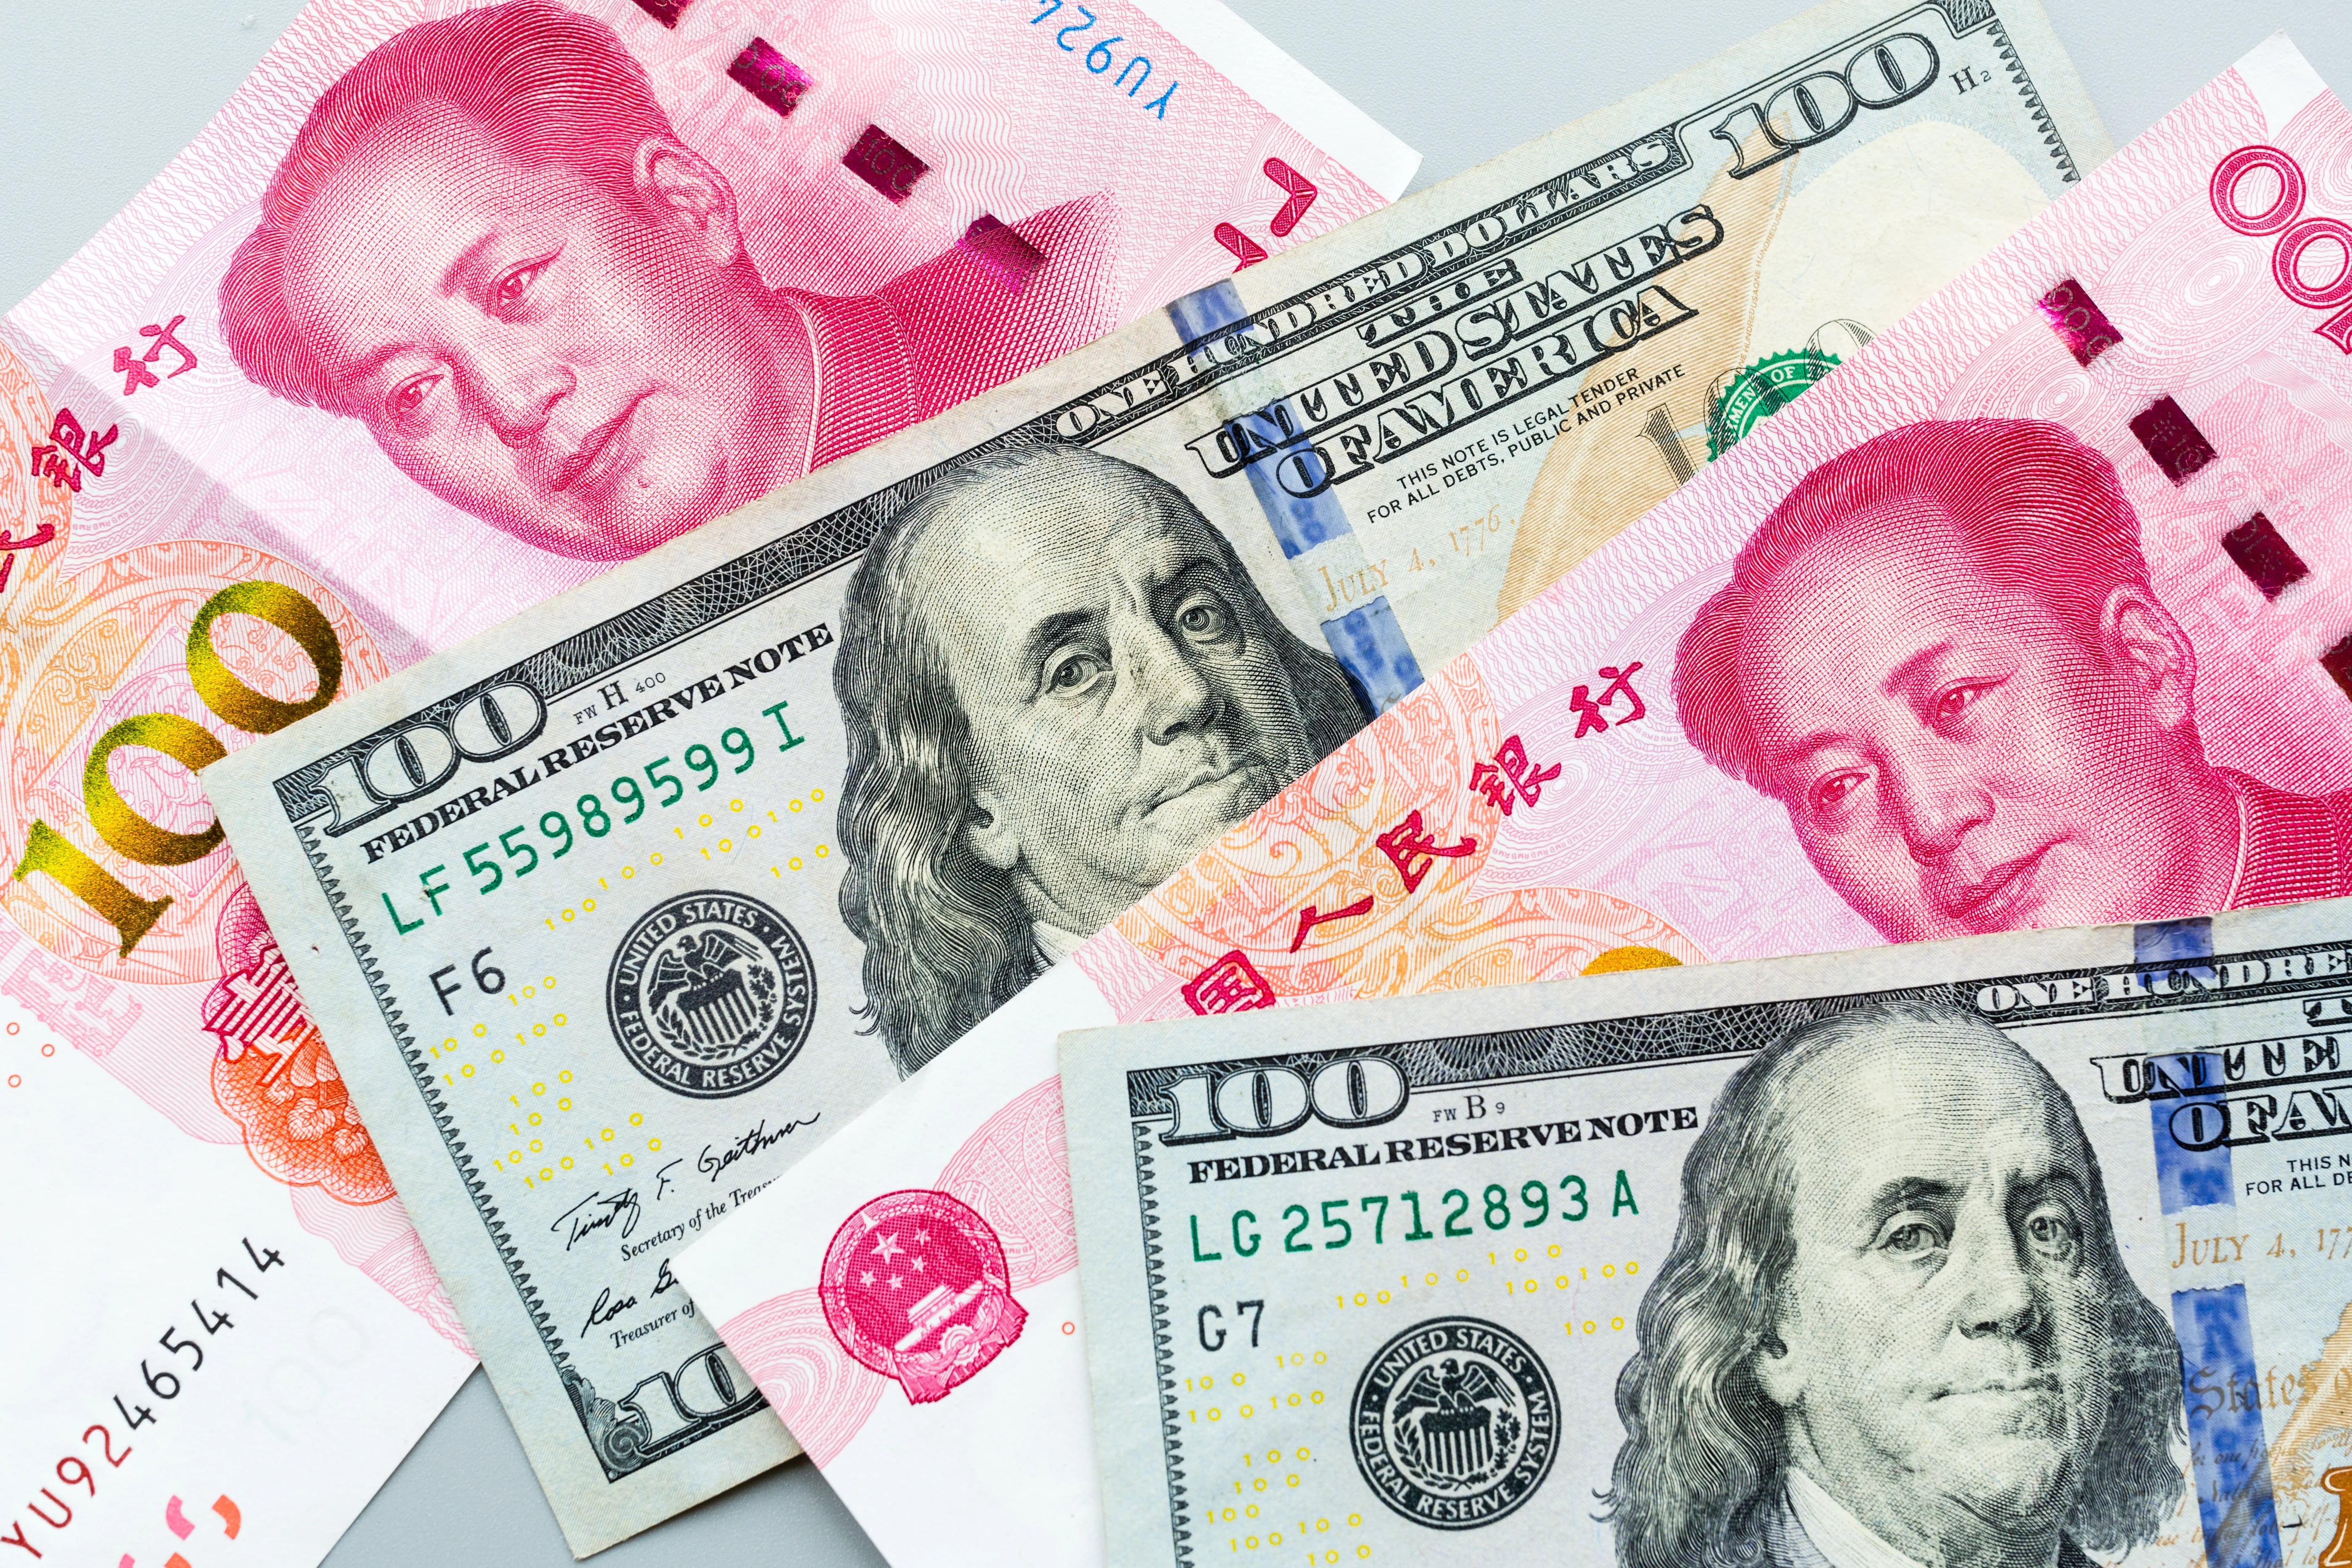 Pago al FMI con yuanes: cómo afectaría a las reservas del Banco Central